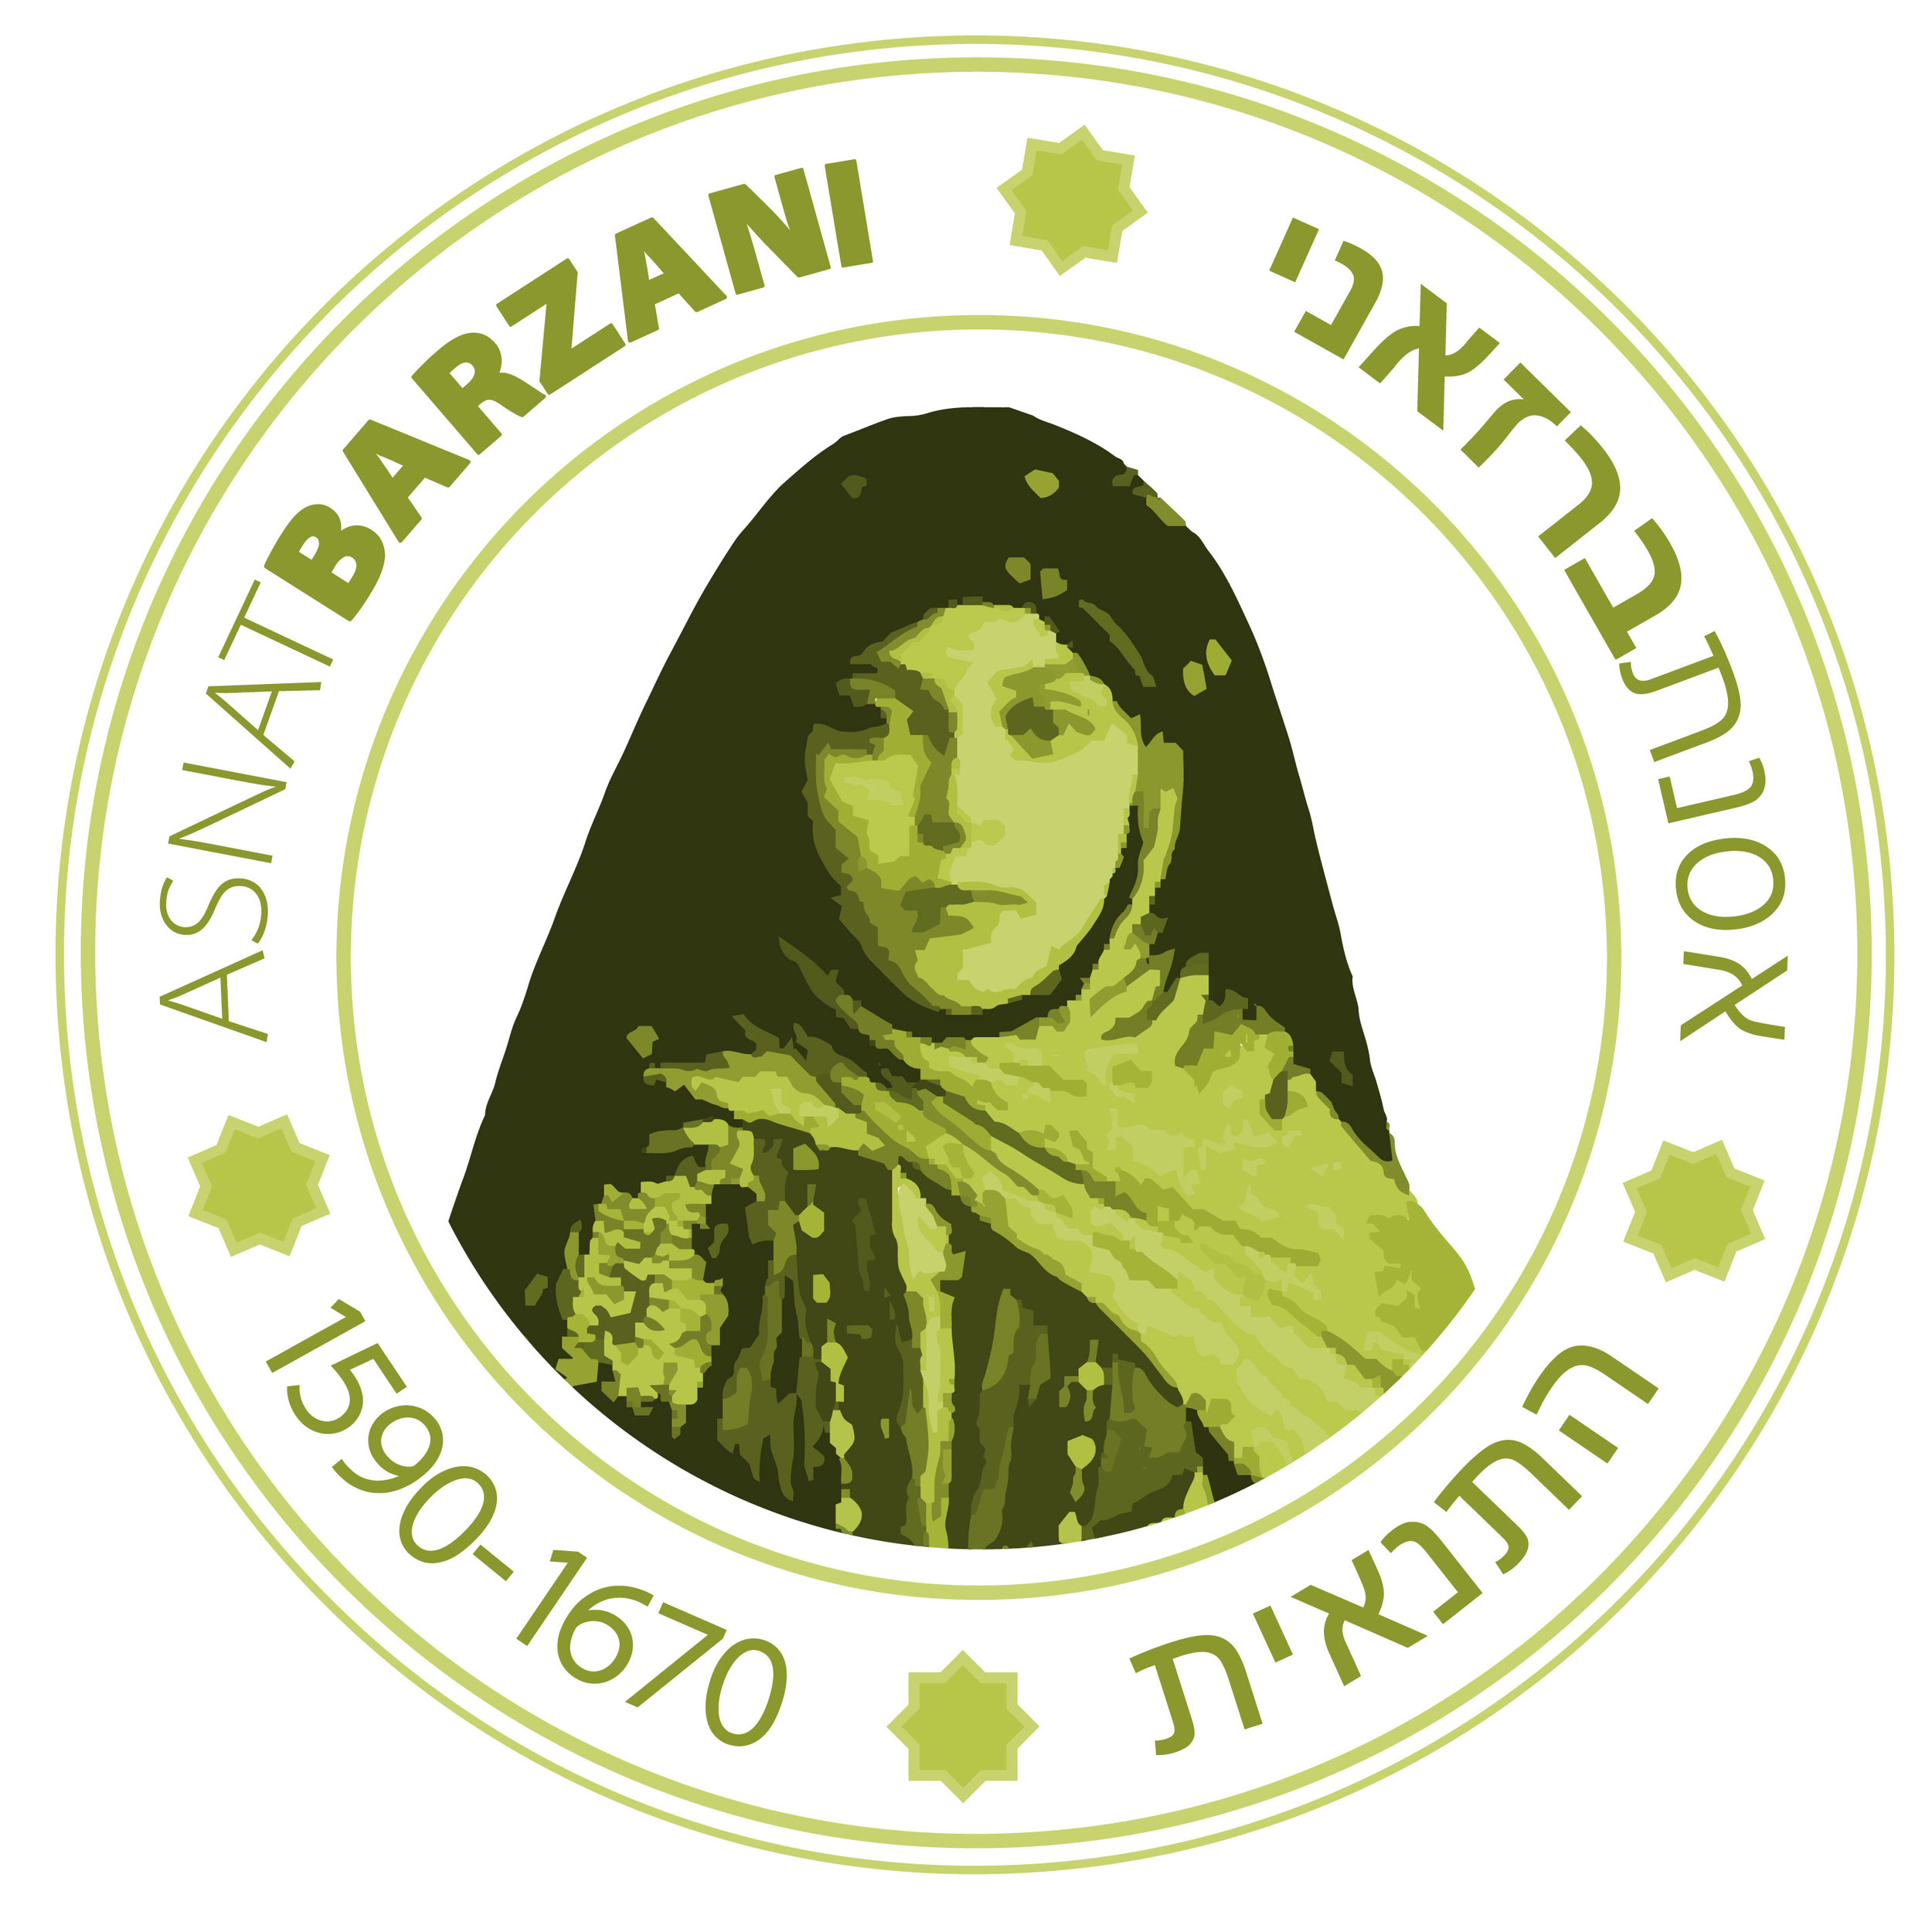 Tanait Asnat Barzani